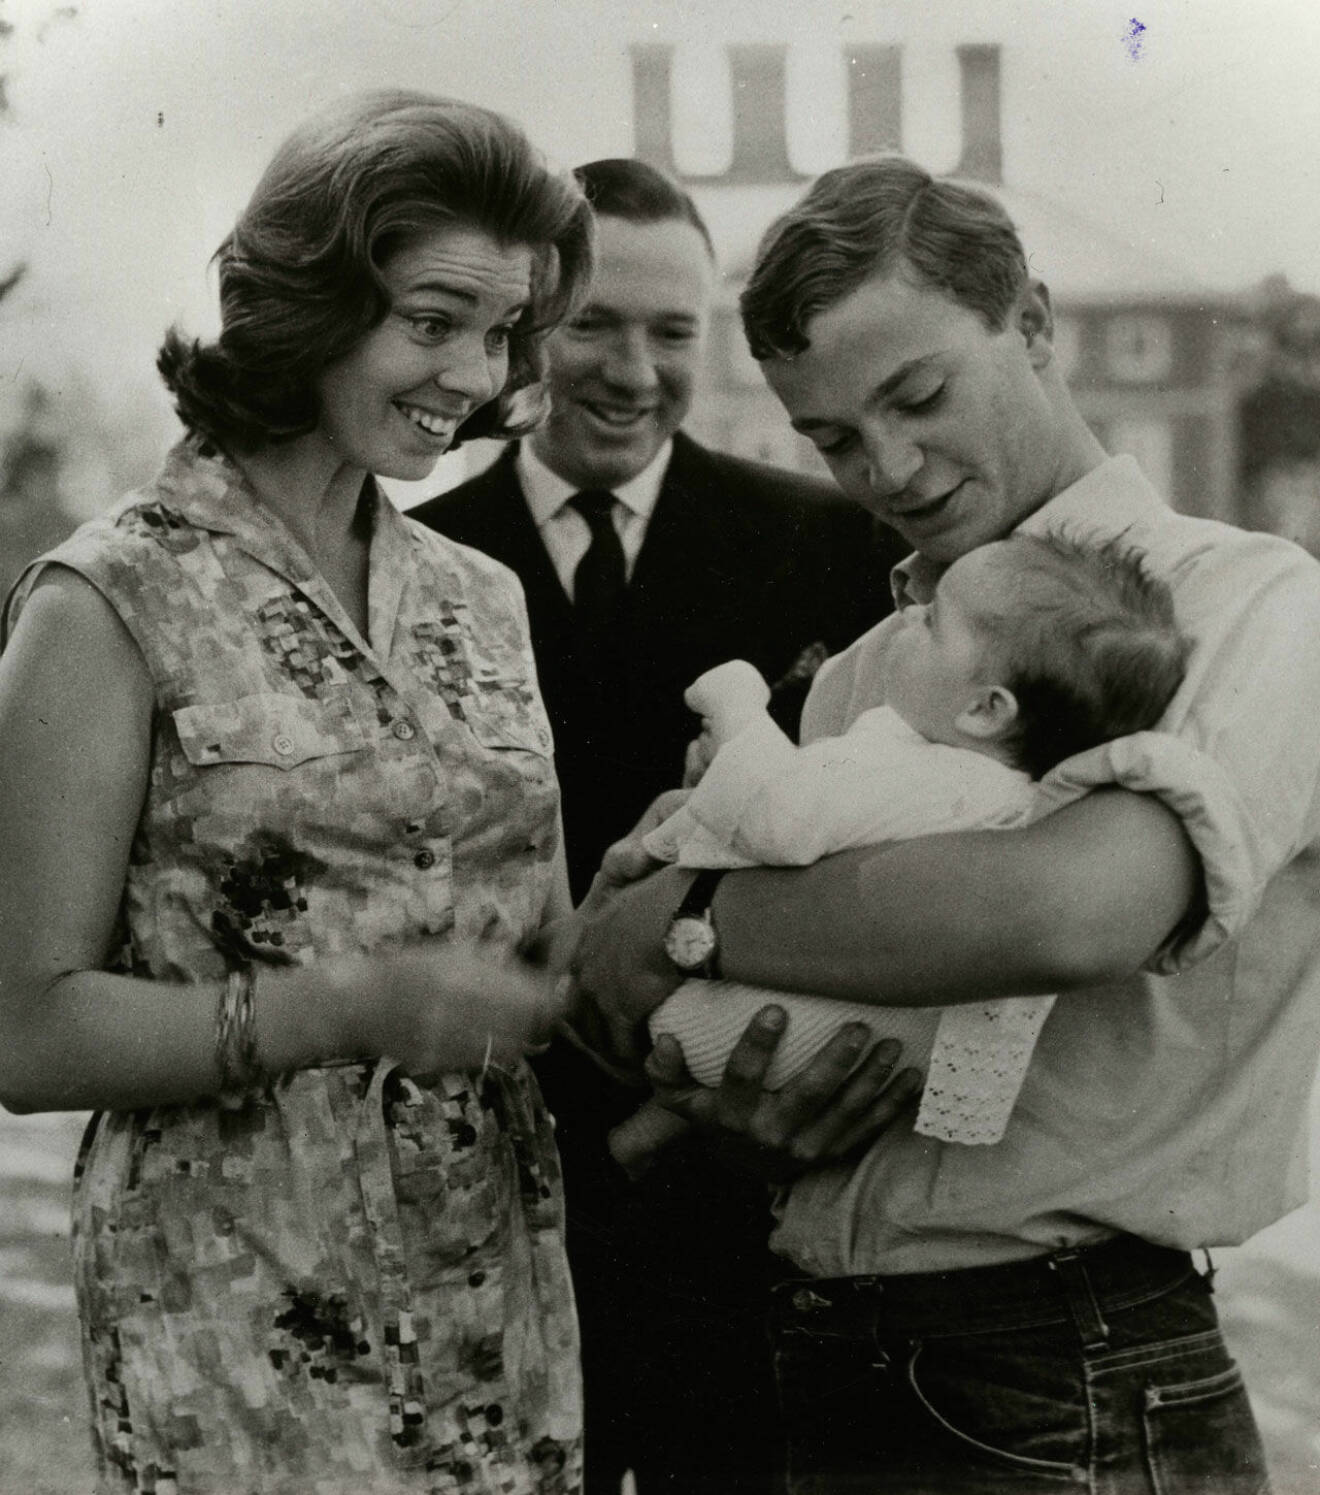 Kungen, 19, med prinsessan Margarethas förstfödda, dottern Sybilla Ambler, i famnen. Och året var 1965.